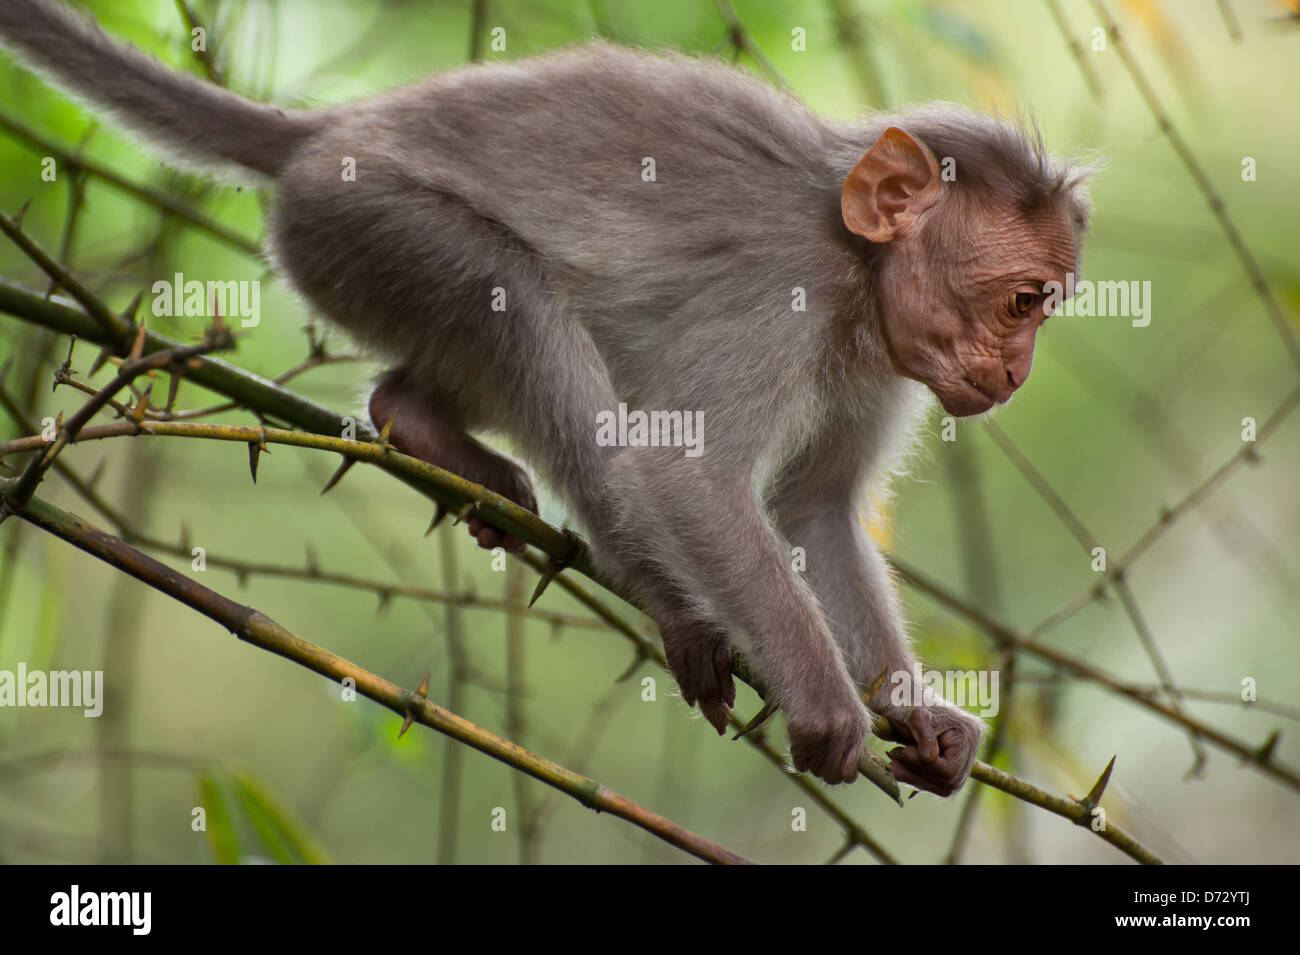 Piccola scimmia macaco passeggiate nella foresta di bamboo. Animale selvaggio, India del Sud Foto Stock